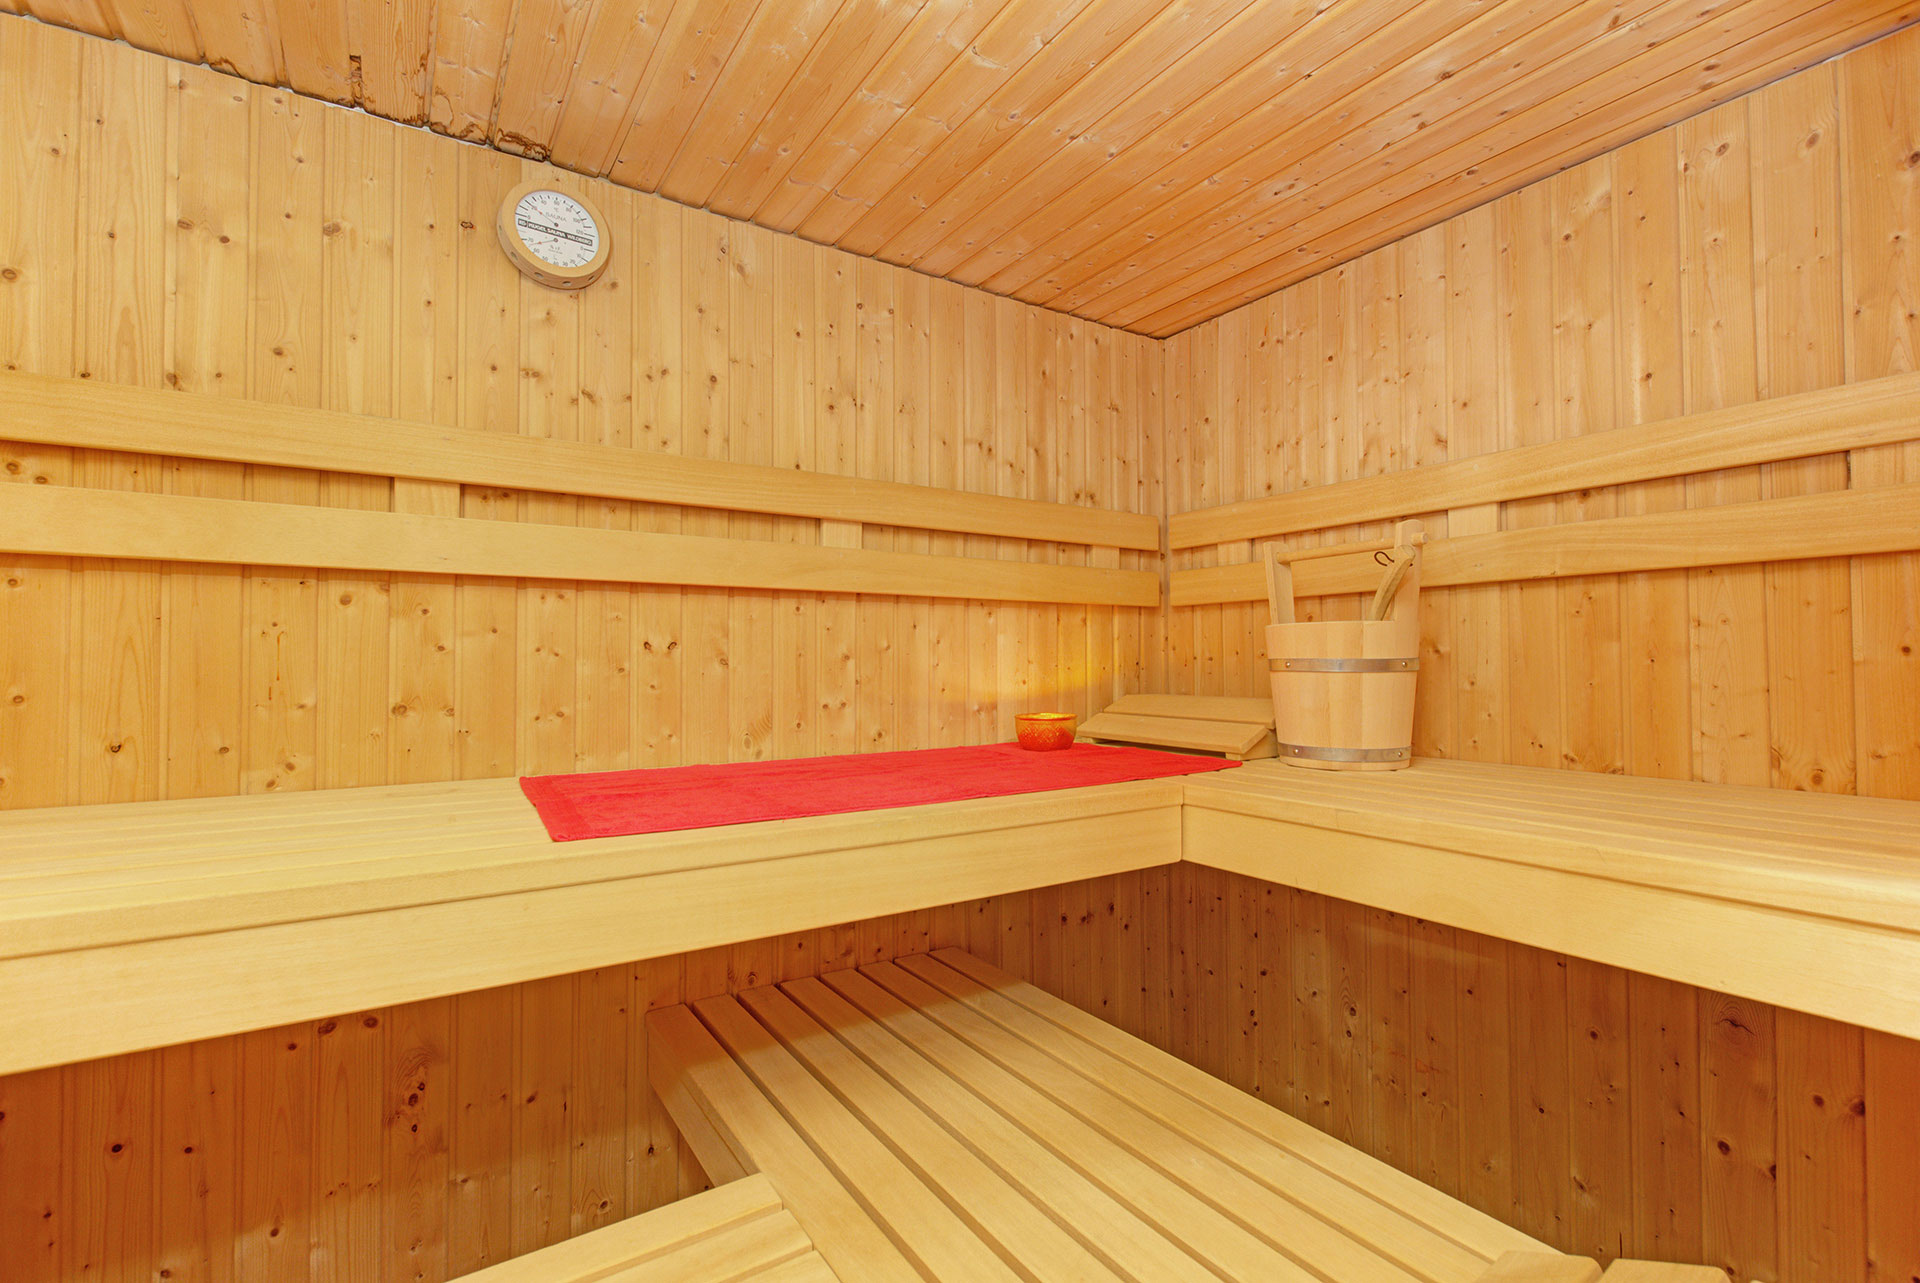 hotelfoto grosse sauna mit rotem handtuch